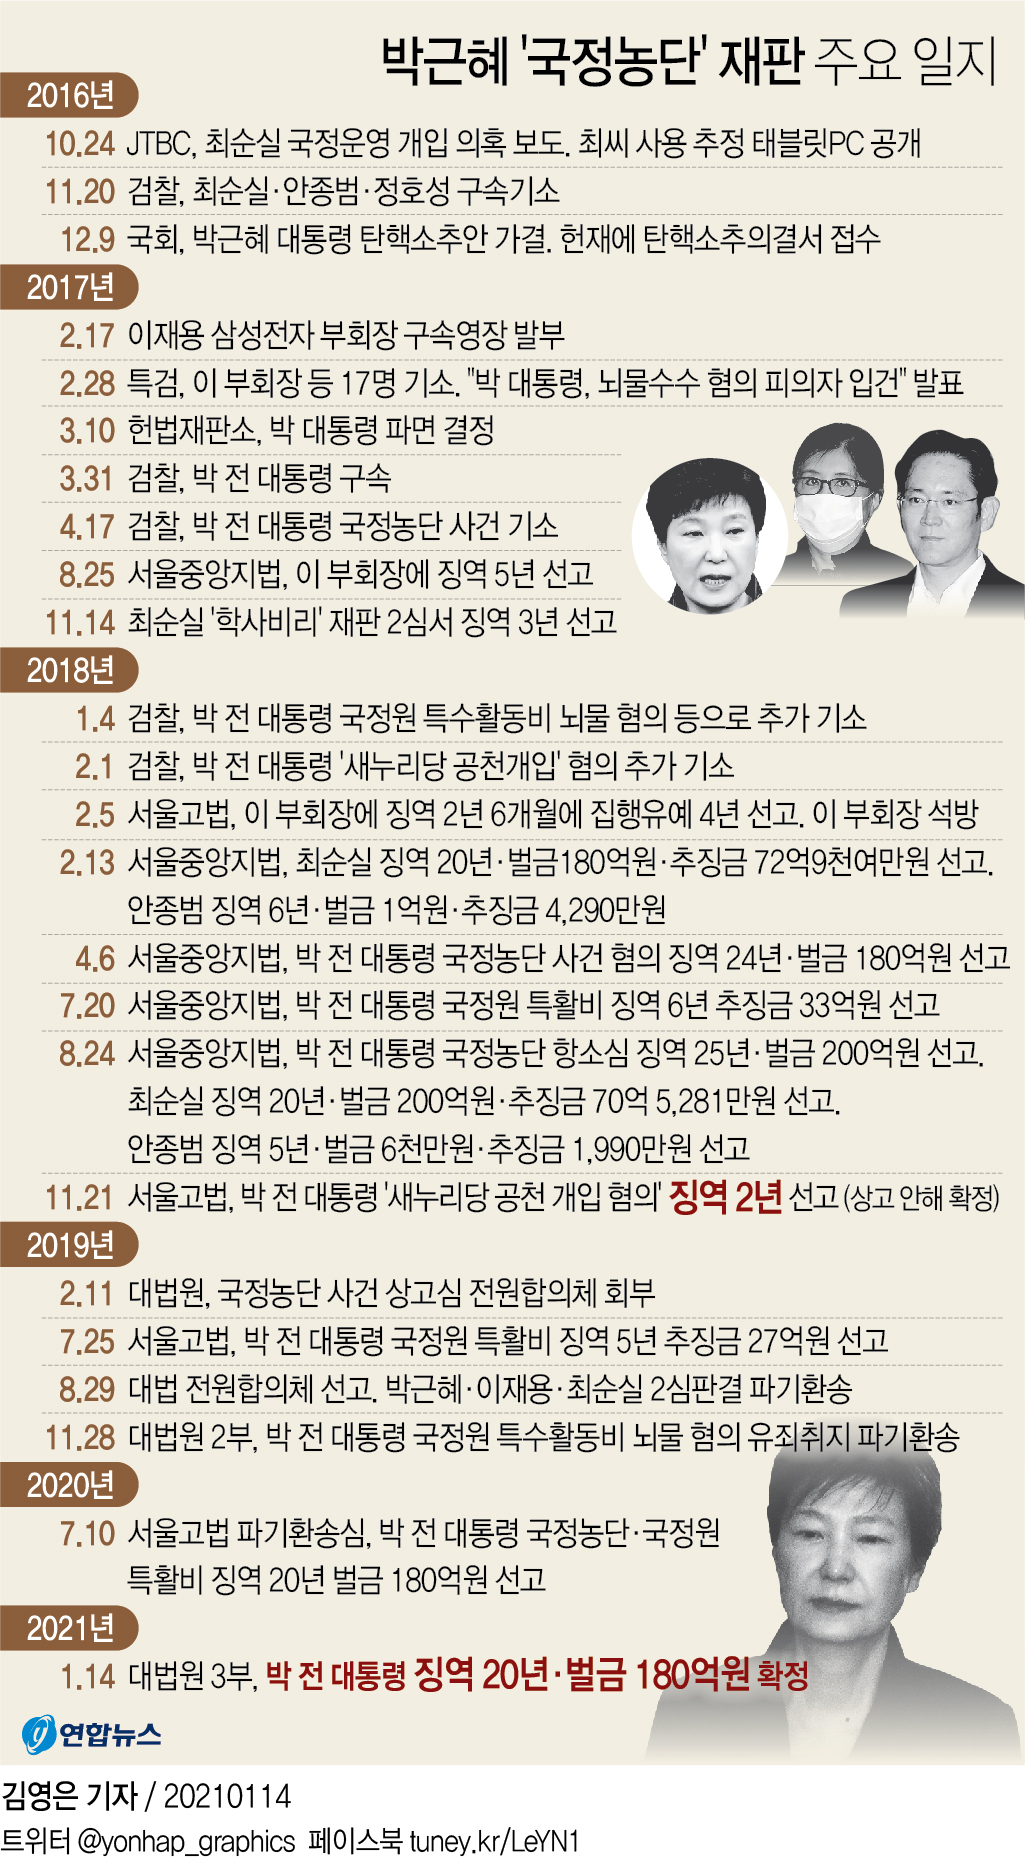 [그래픽] 박근혜 '국정농단' 재판 주요 일지